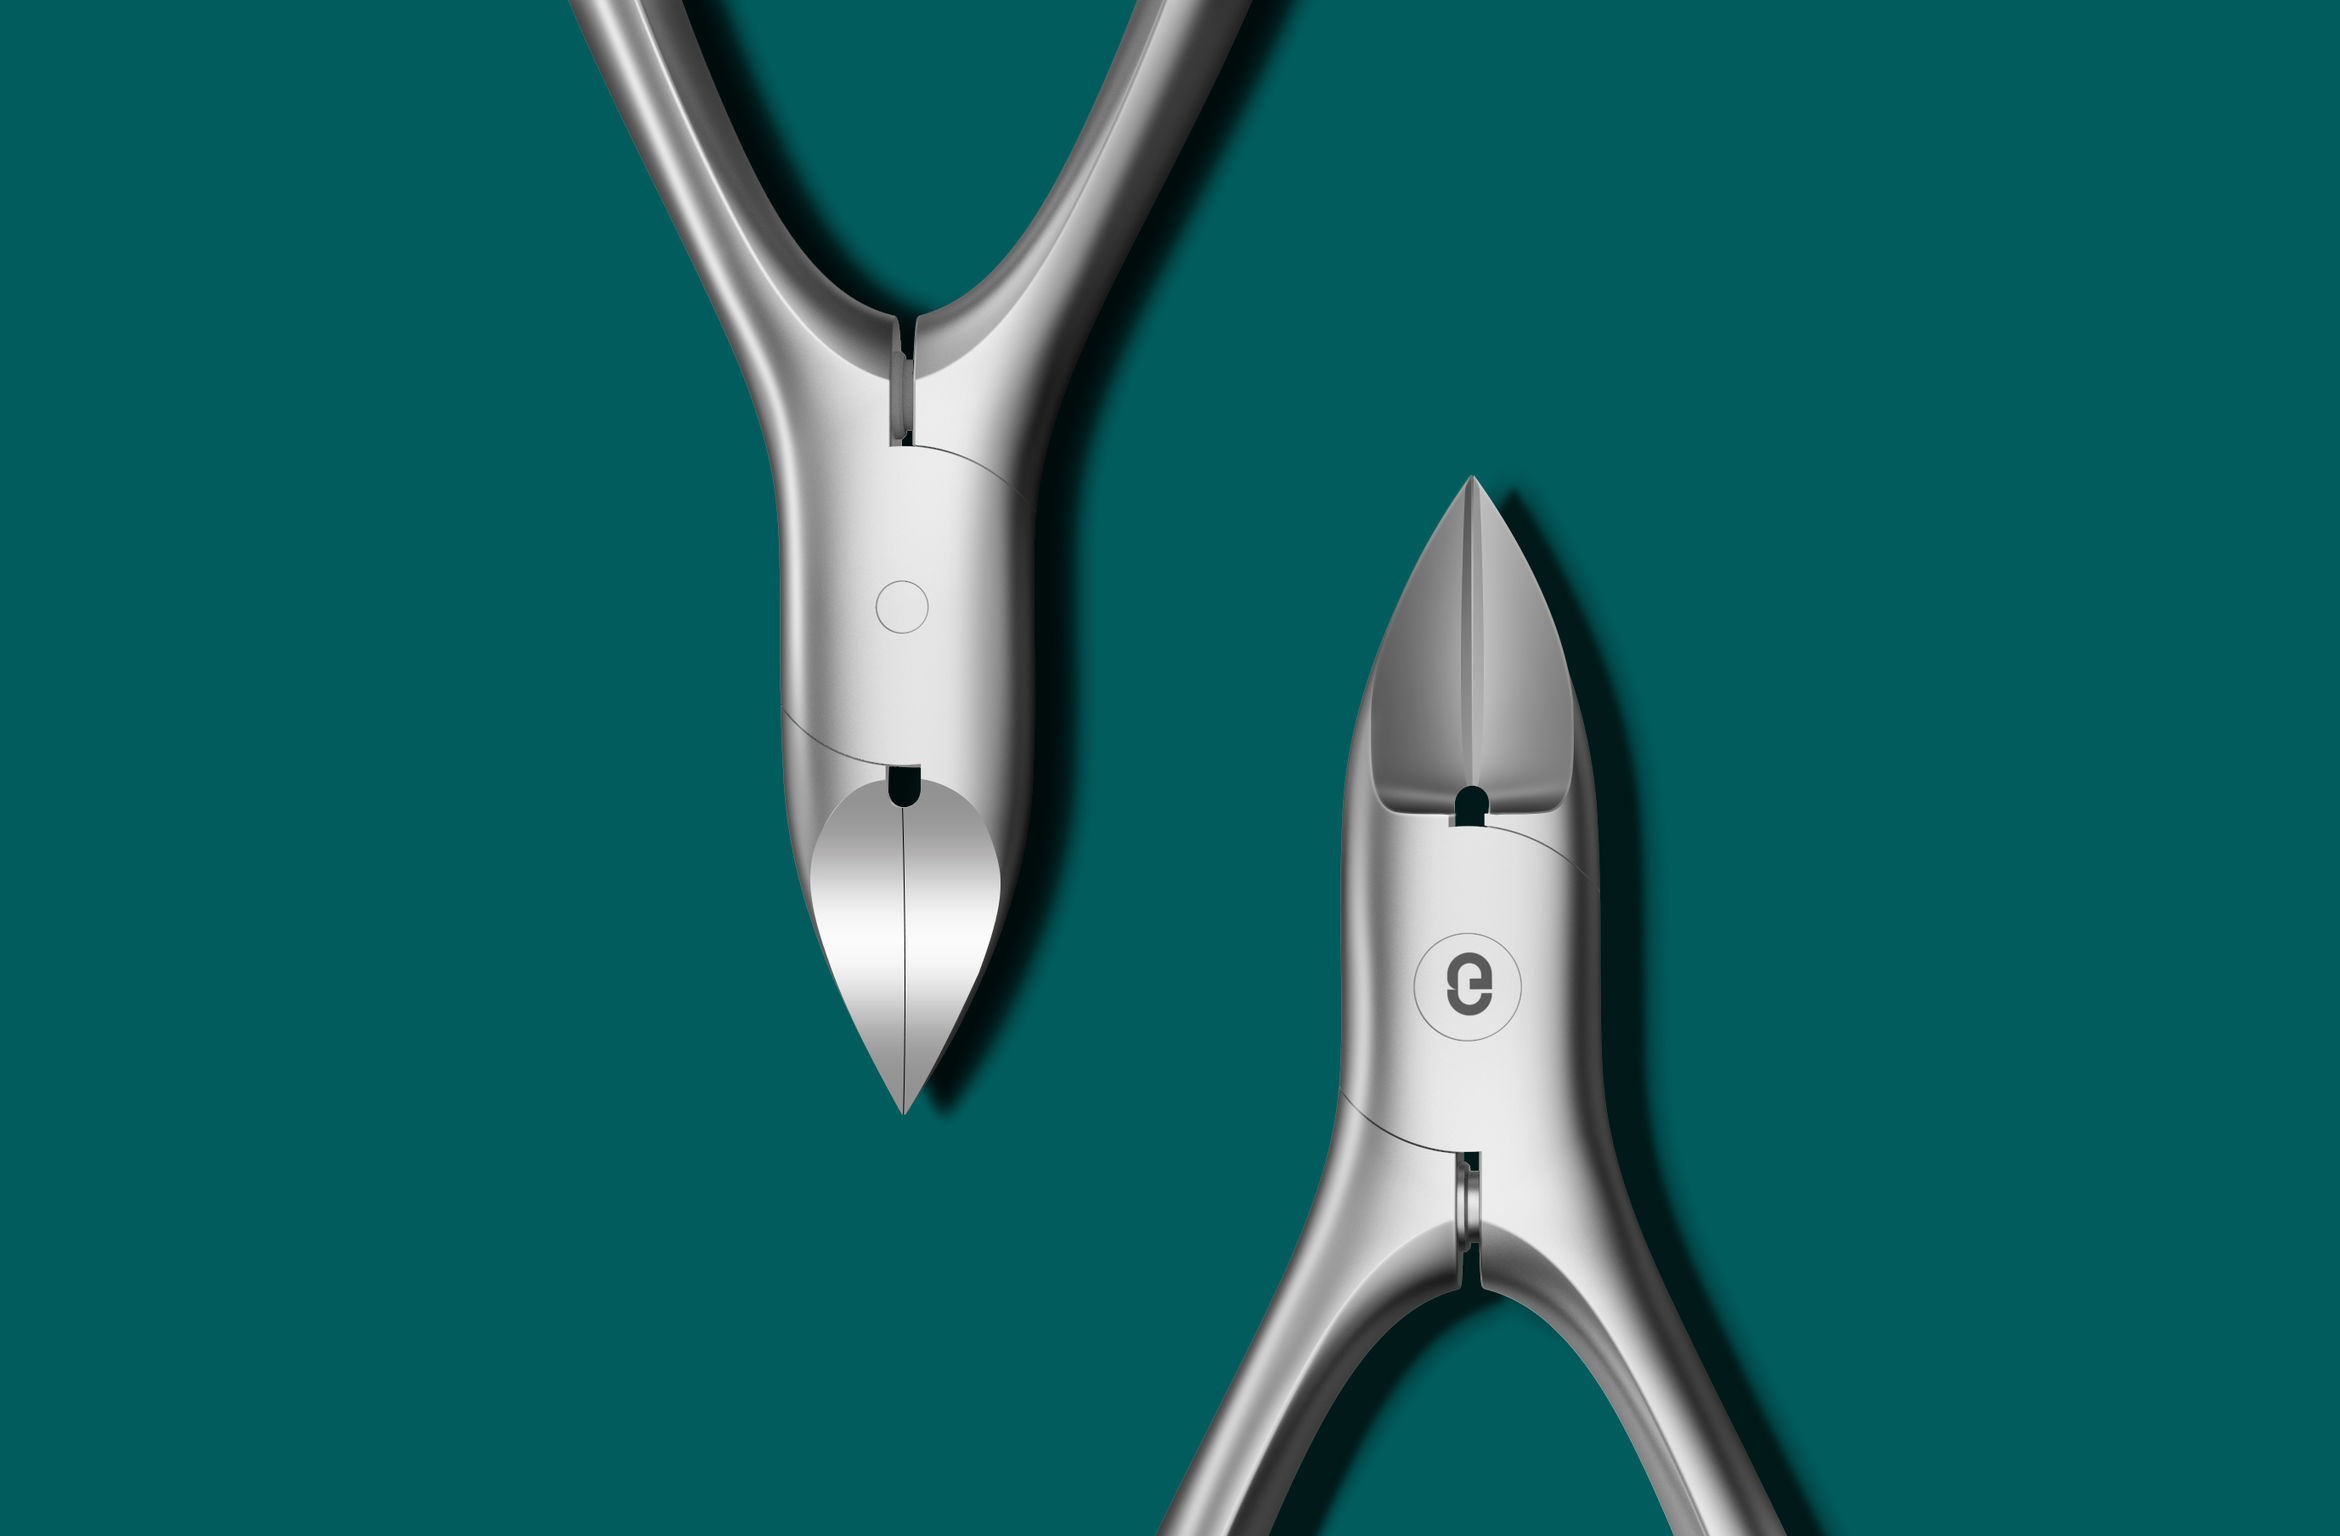 Eagle nail scissors